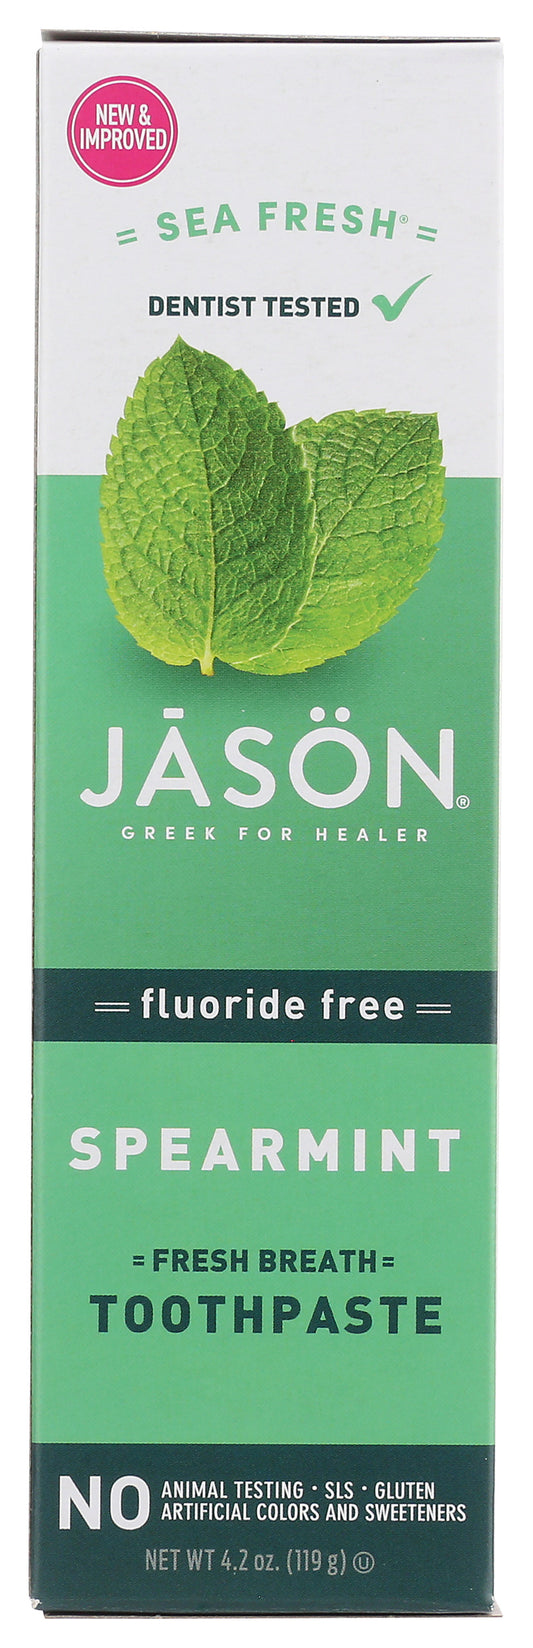 Jason Sea Fresh Spearmint Toothpaste 4.2 oz